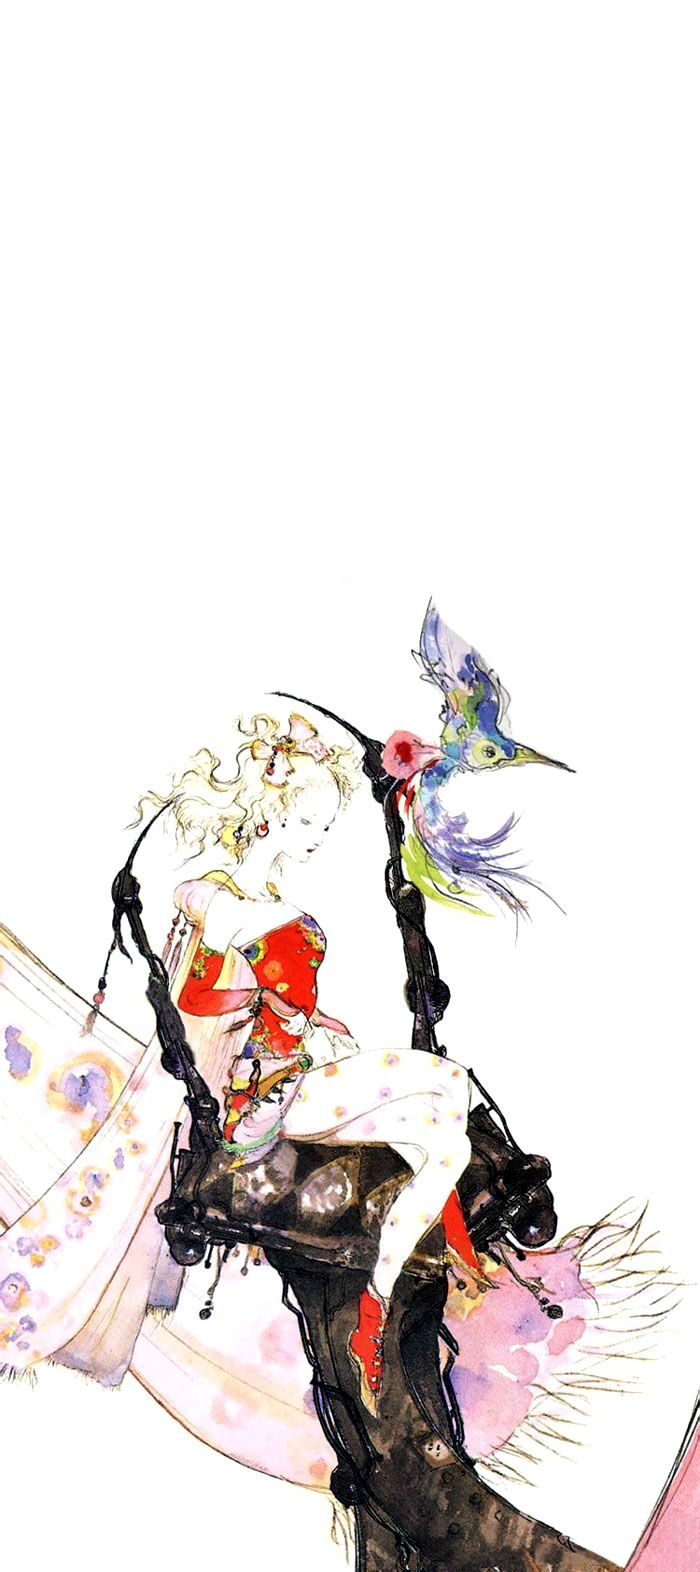 Terra Tina Full Final Fantasy VI Wallpaper. Art By Yoshitaka Amano. Final Fantasy Art, Final Fantasy Tattoo, Fantasy Artwork